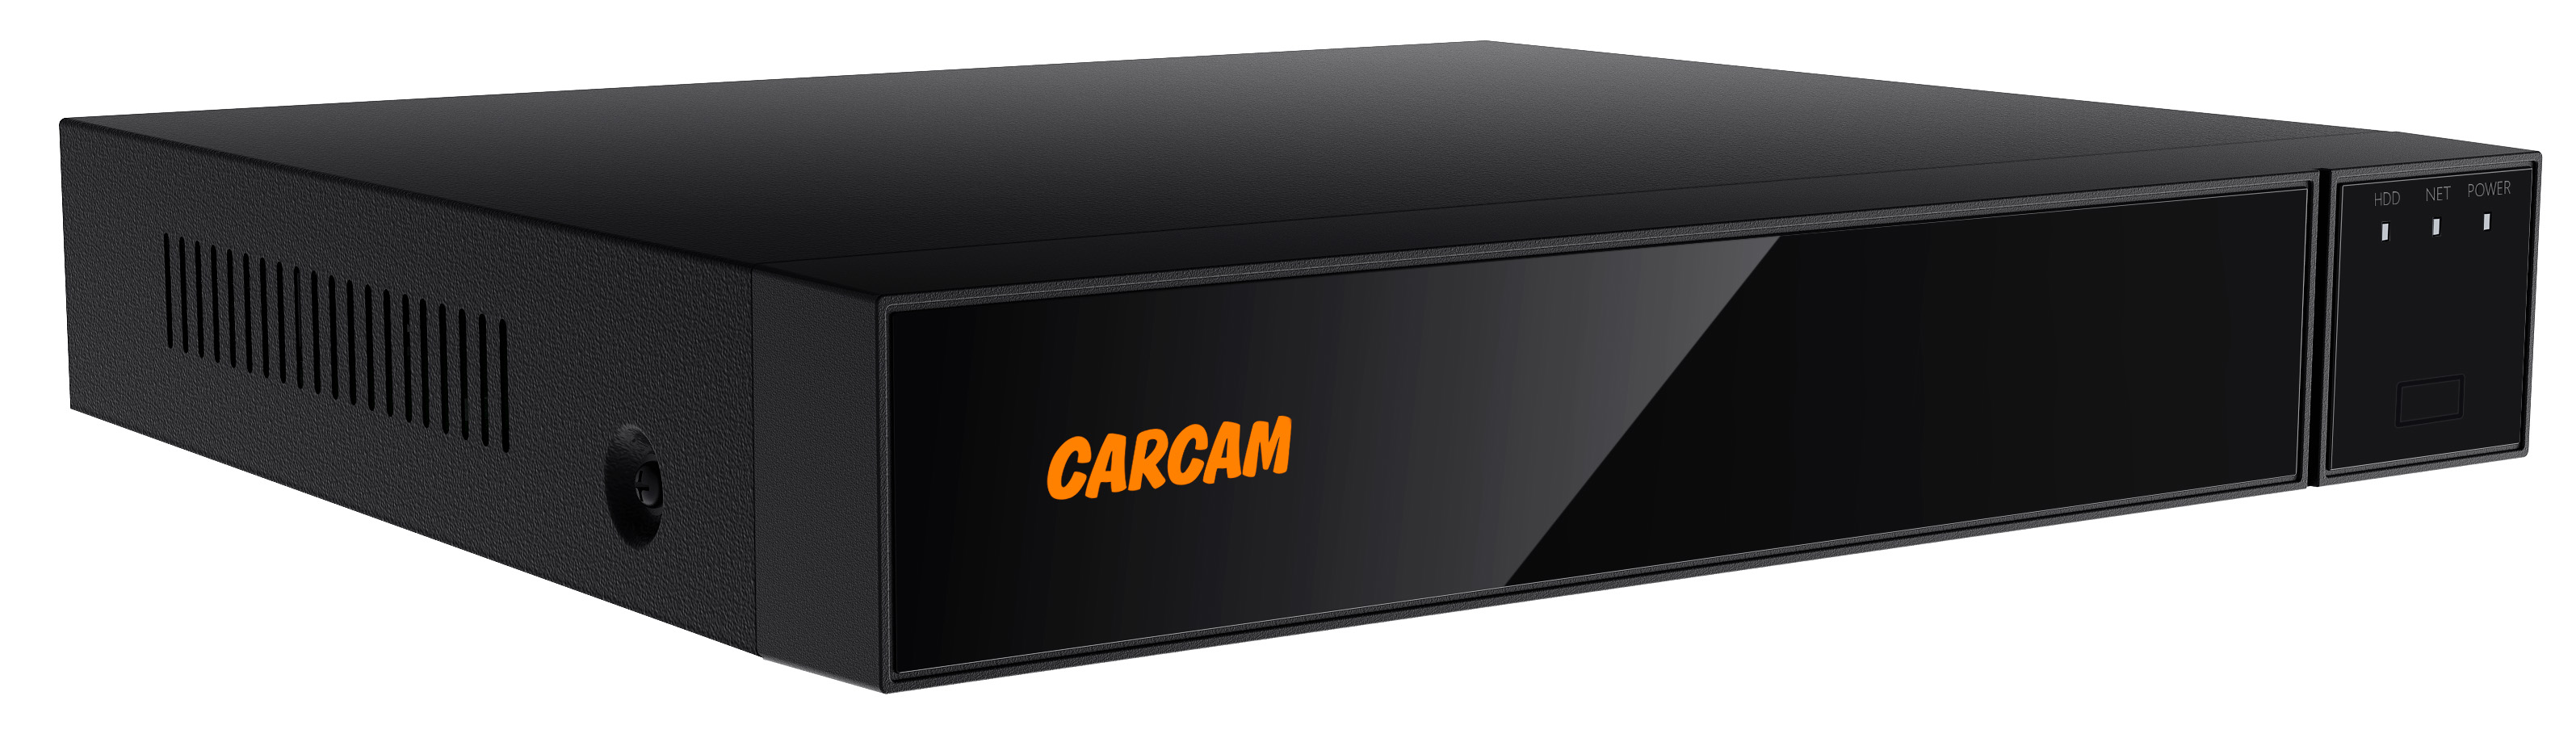 16-канальный гибридный видеорегистратор CARCAM 16CH XVR 8716 64 канальный ip видеорегистратор carcam 64ch nvr 8764